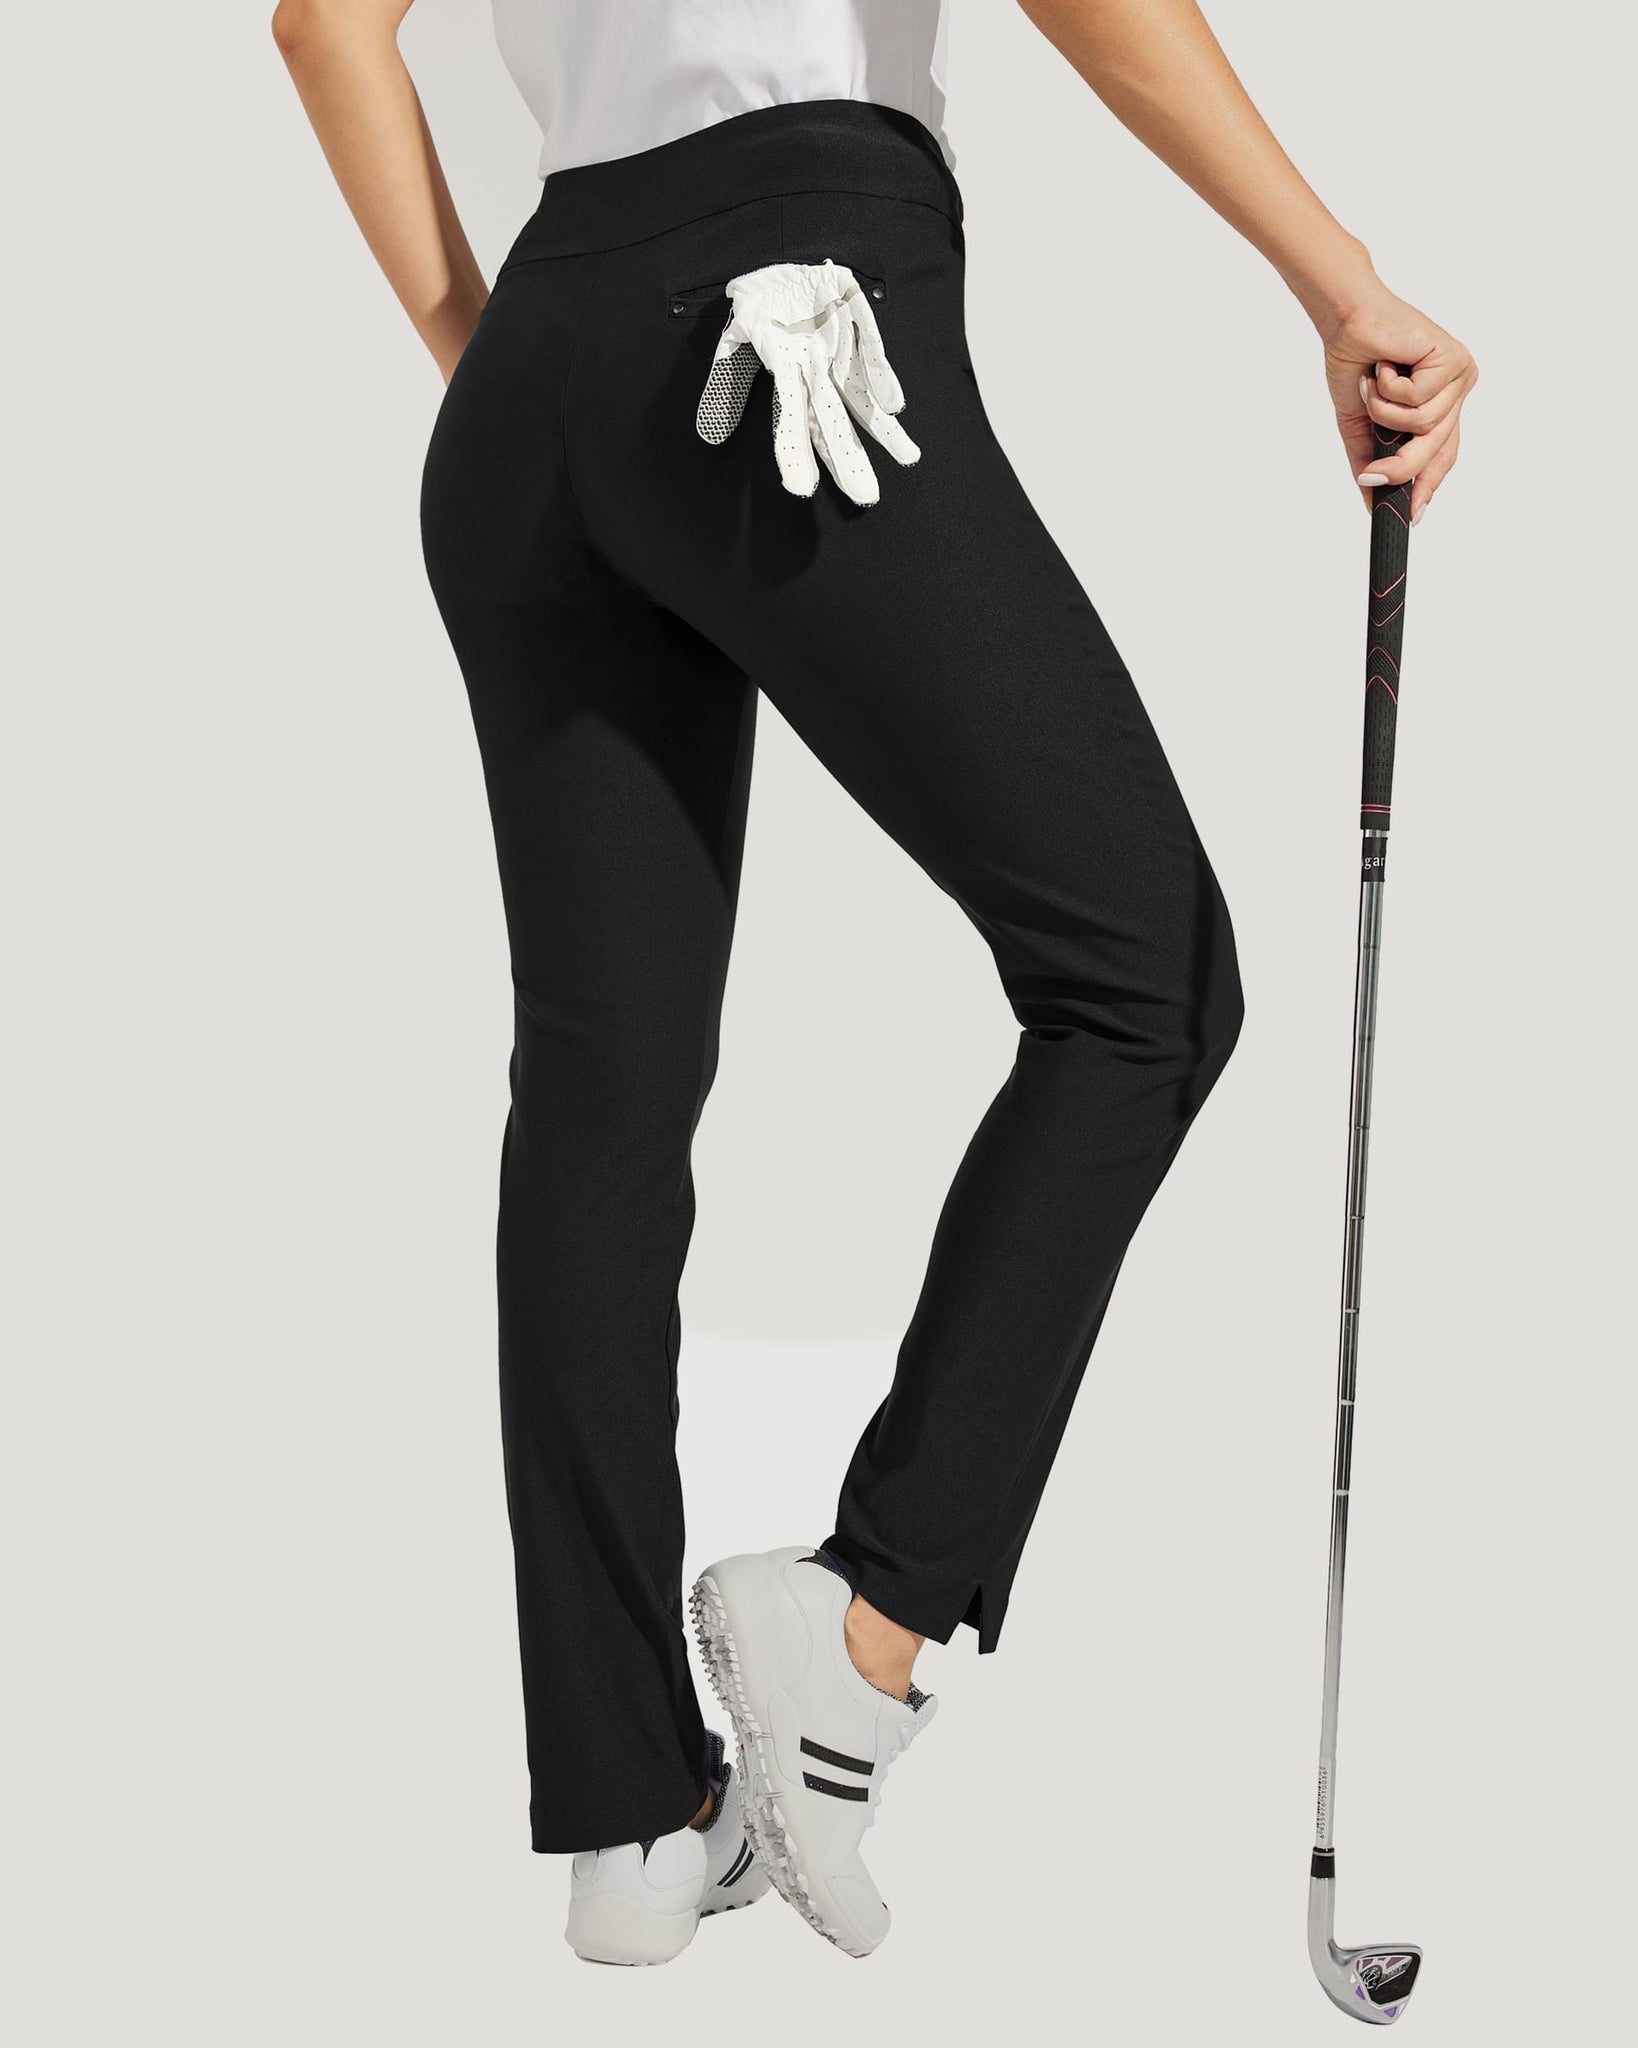 Women's Golf Pull-On Pants_Black_model3